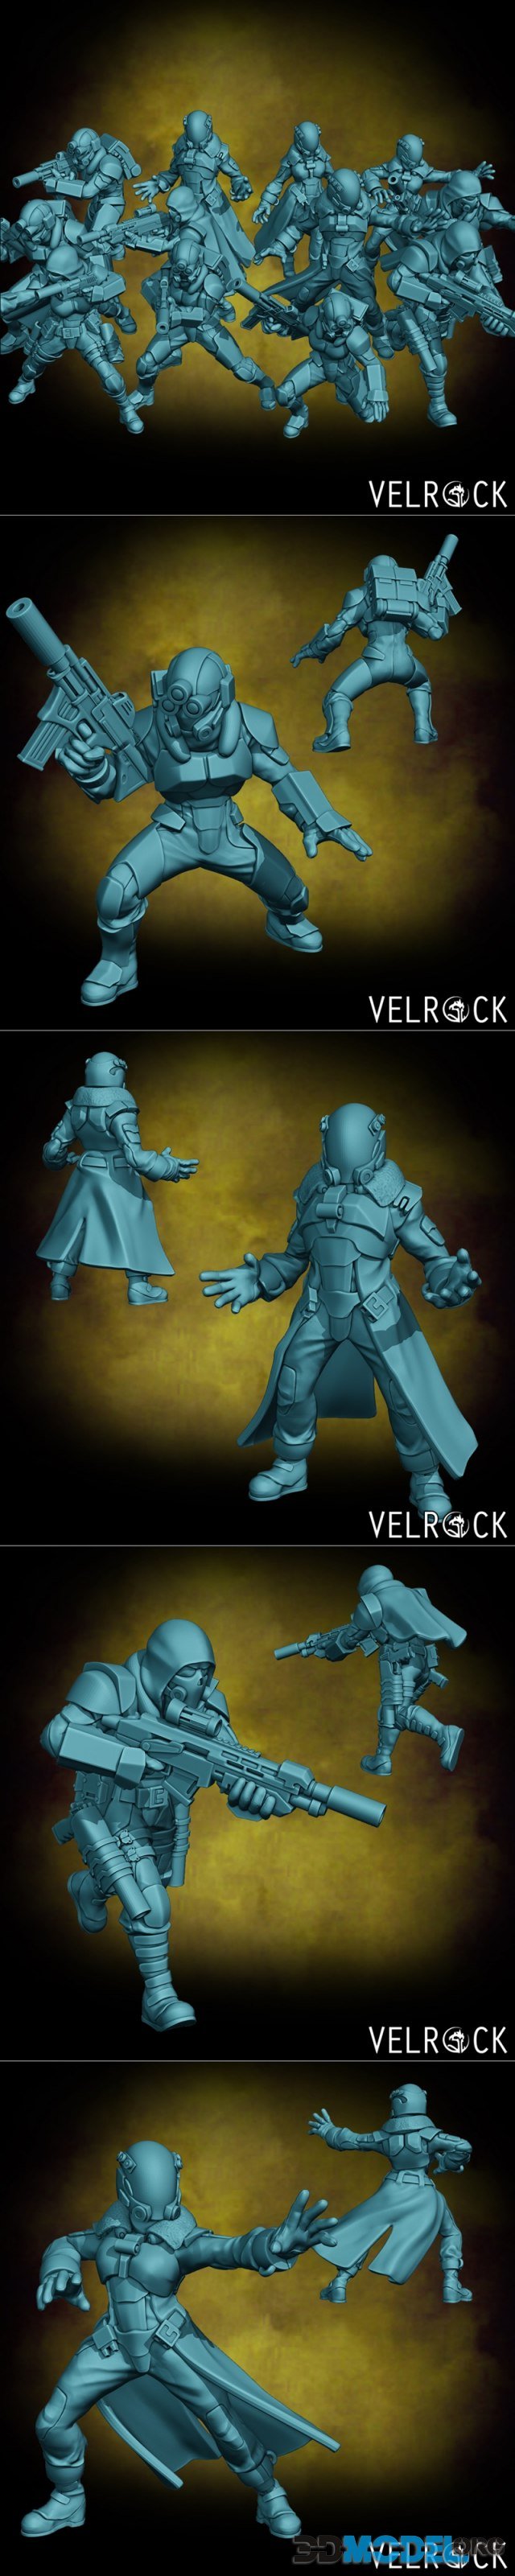 Velrock Art - Tempest Guardsmen Black Ops Unit – Printable